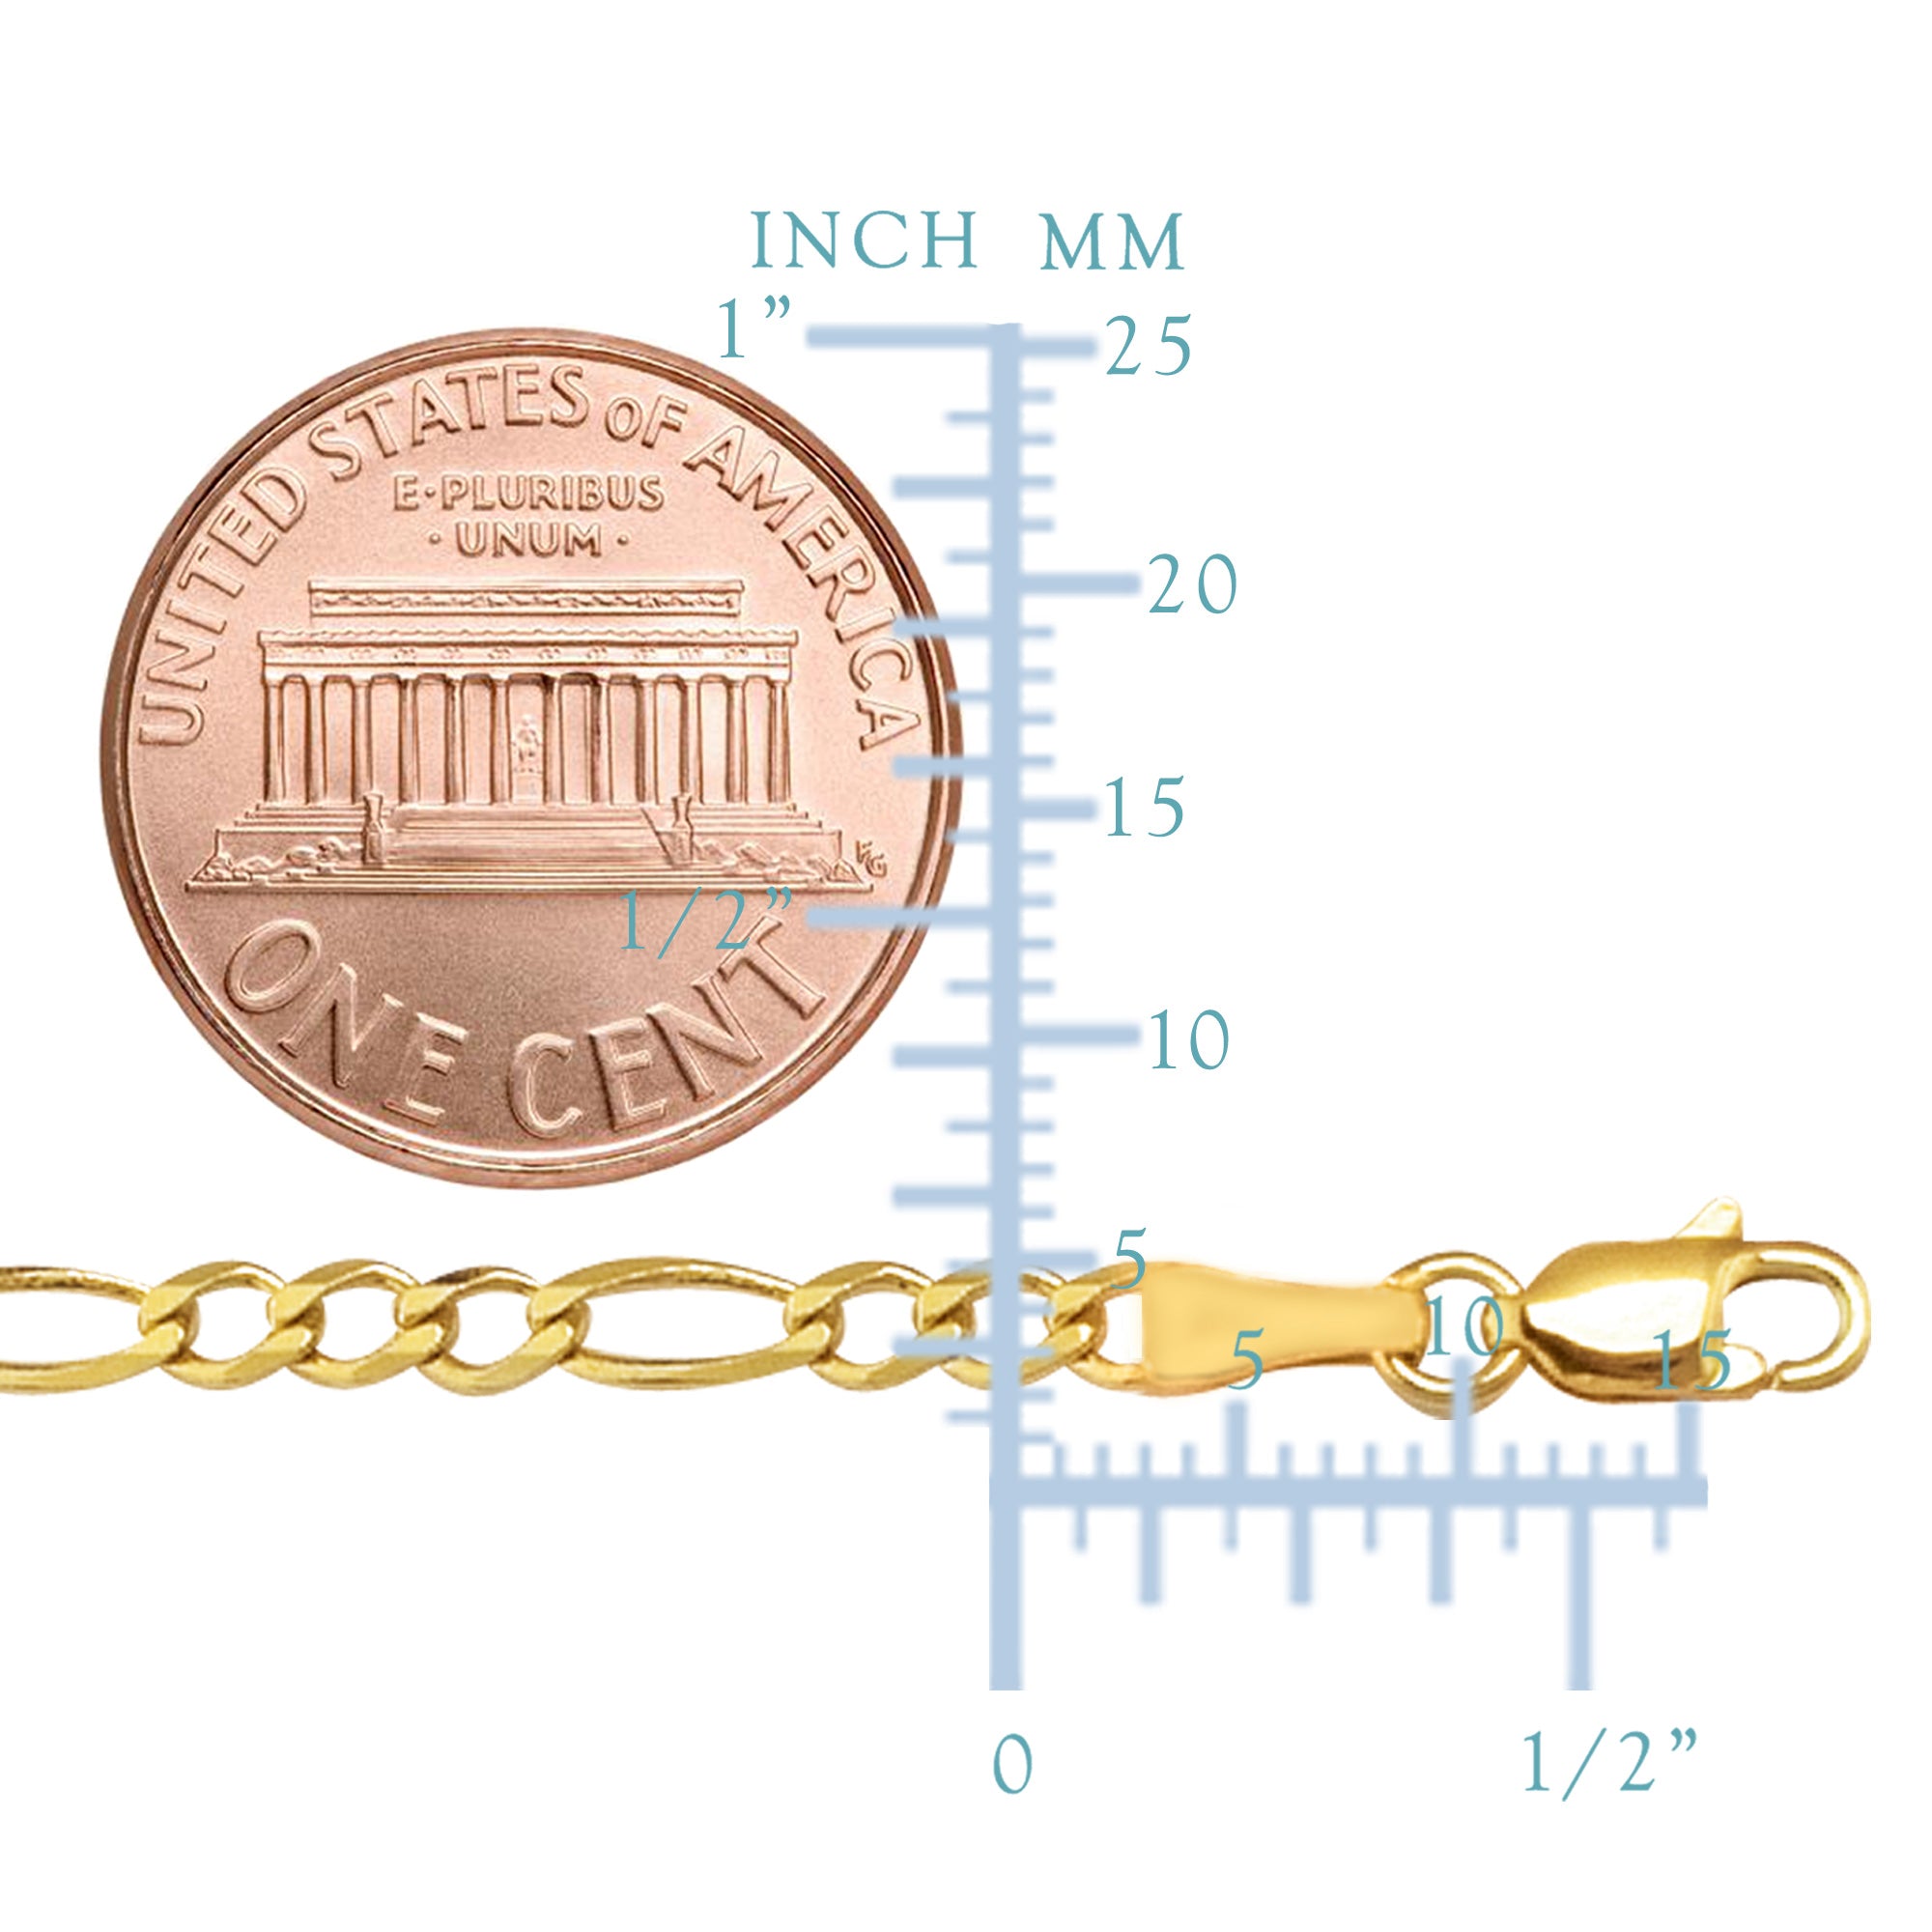 10 k gult massivt guld Figaro Chain Halsband, 3,0 mm fina designersmycken för män och kvinnor